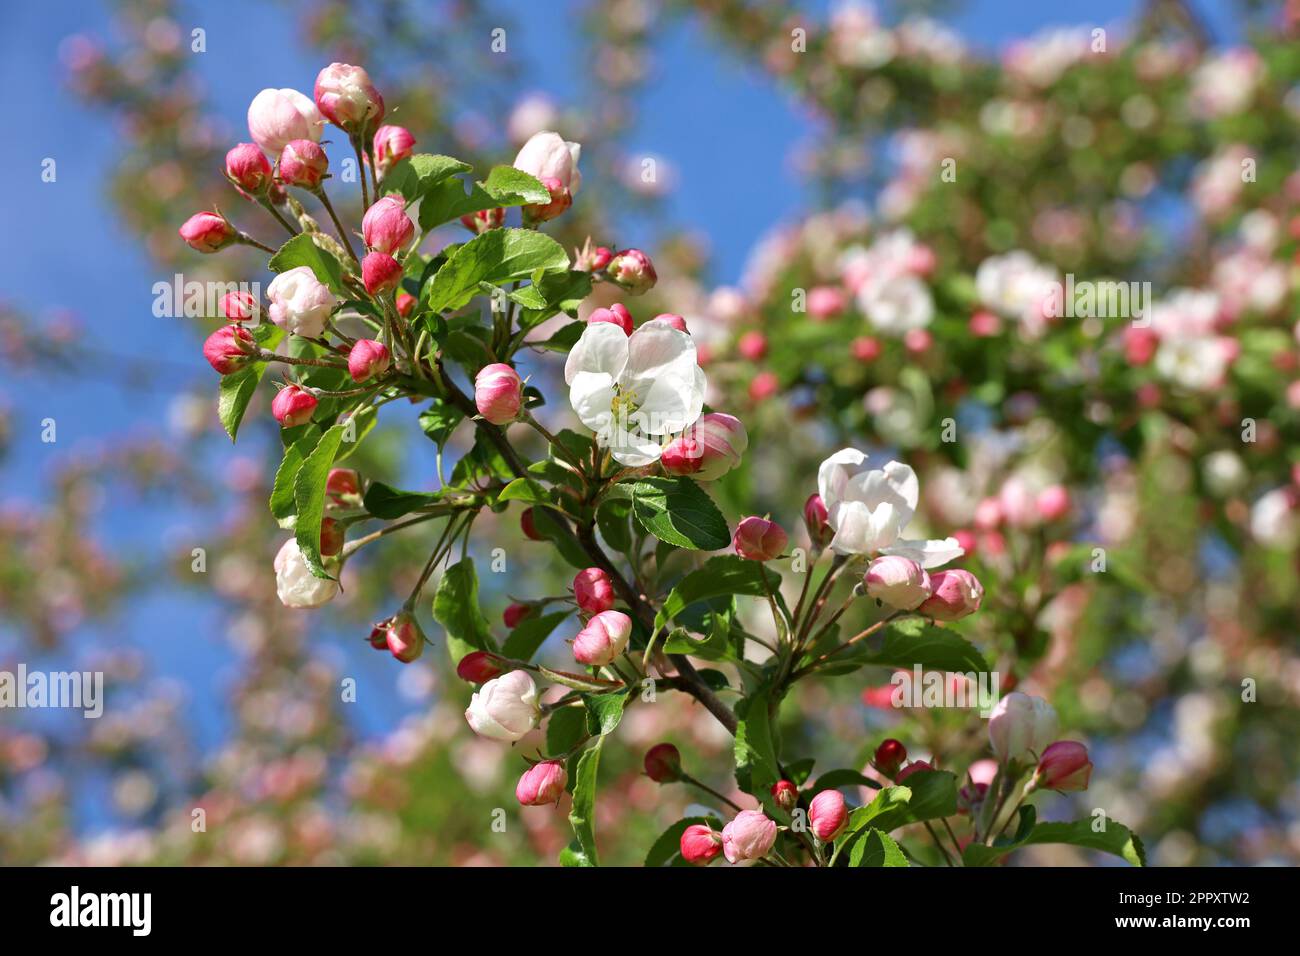 Apfelblüte auf einem Ast im Frühlingsgarten an sonnigen Tagen. Rosafarbene Knospen und Blumen mit grünen Blättern auf blauem Himmelshintergrund Stockfoto